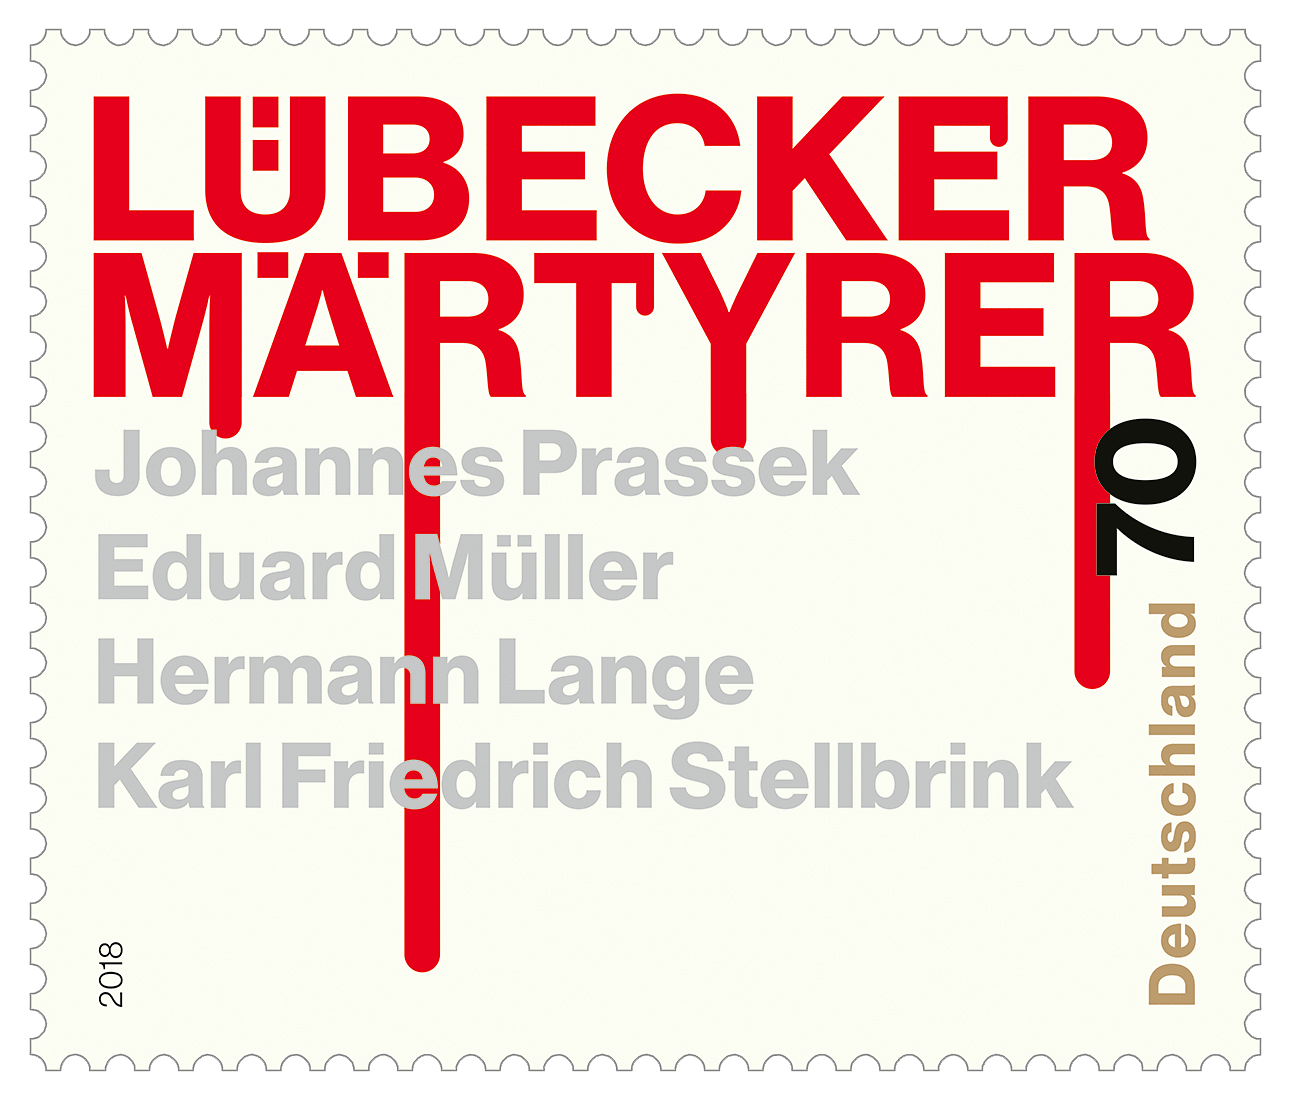 https://www.borek.de/briefmarke-luebecker-maertyrer